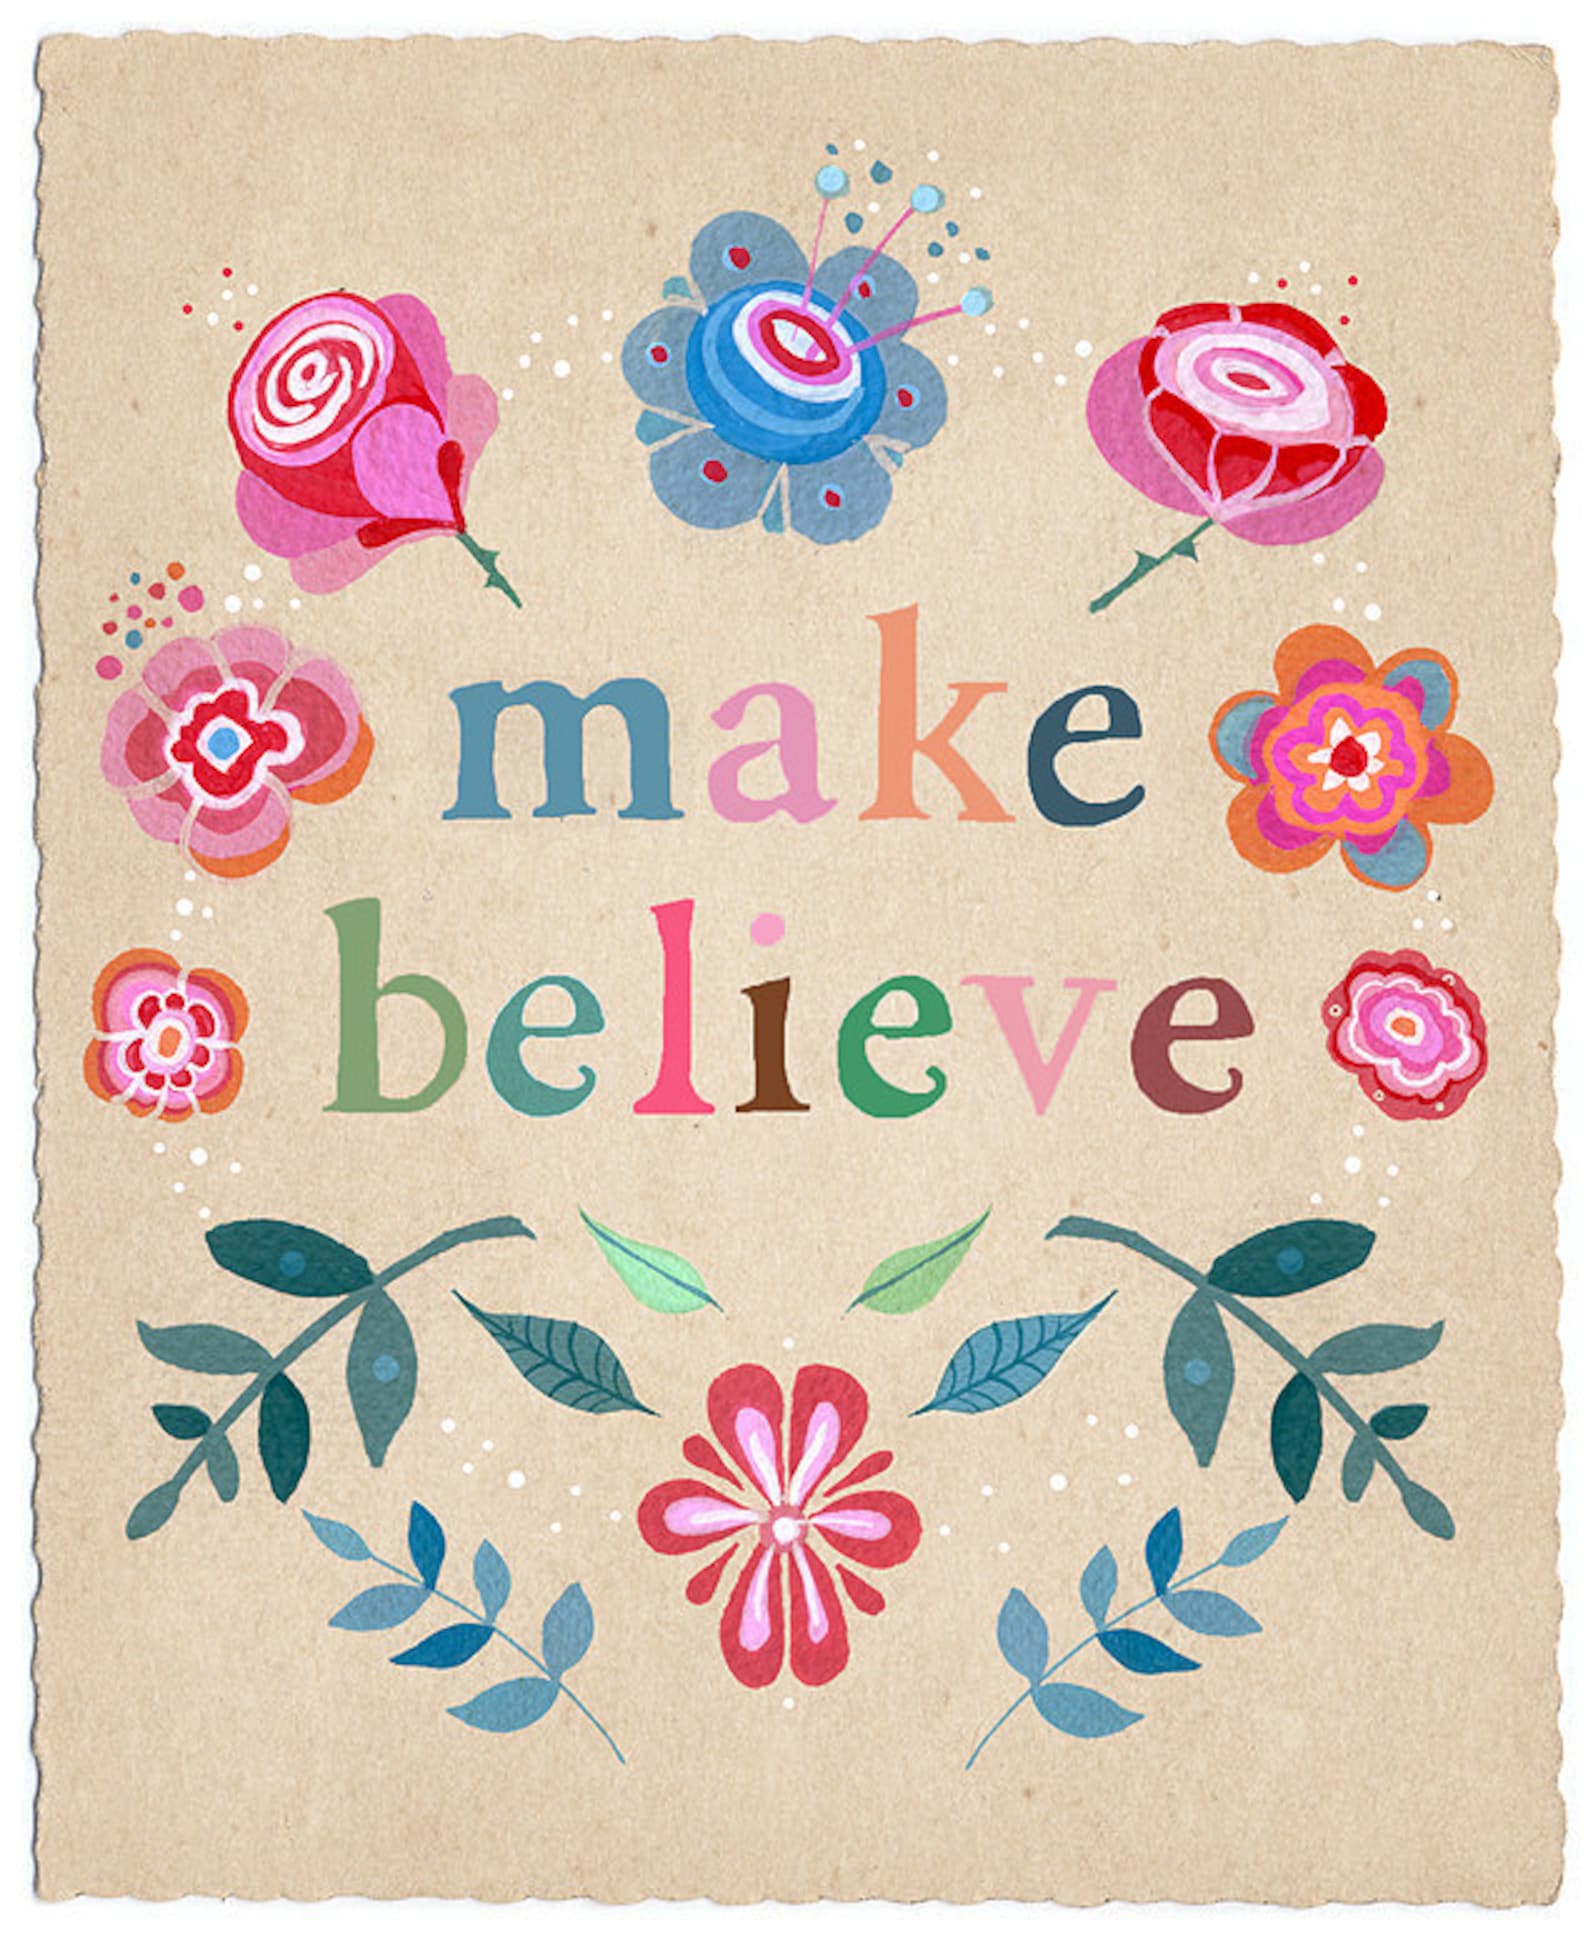 Make believe. Believe Art. Make believe Art. Believe do make